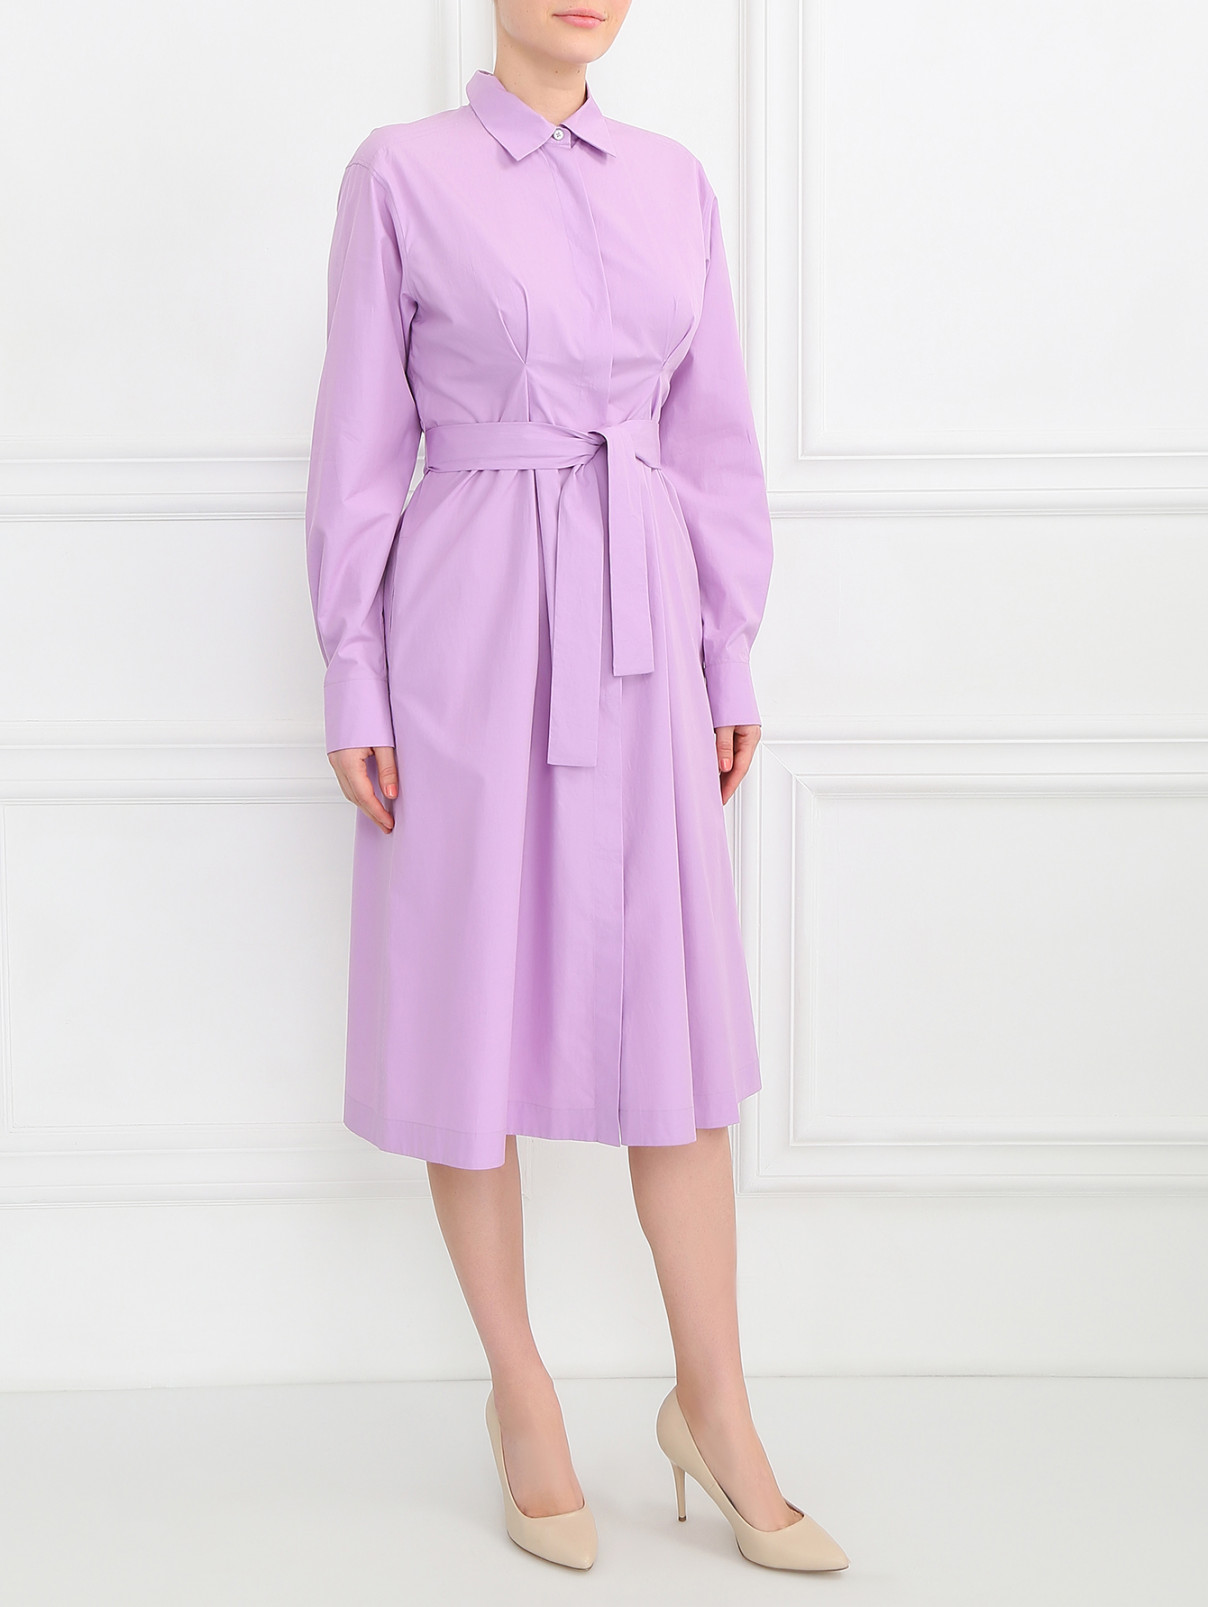 Платье-рубашка из хлопка Jil Sander  –  Модель Общий вид  – Цвет:  Фиолетовый